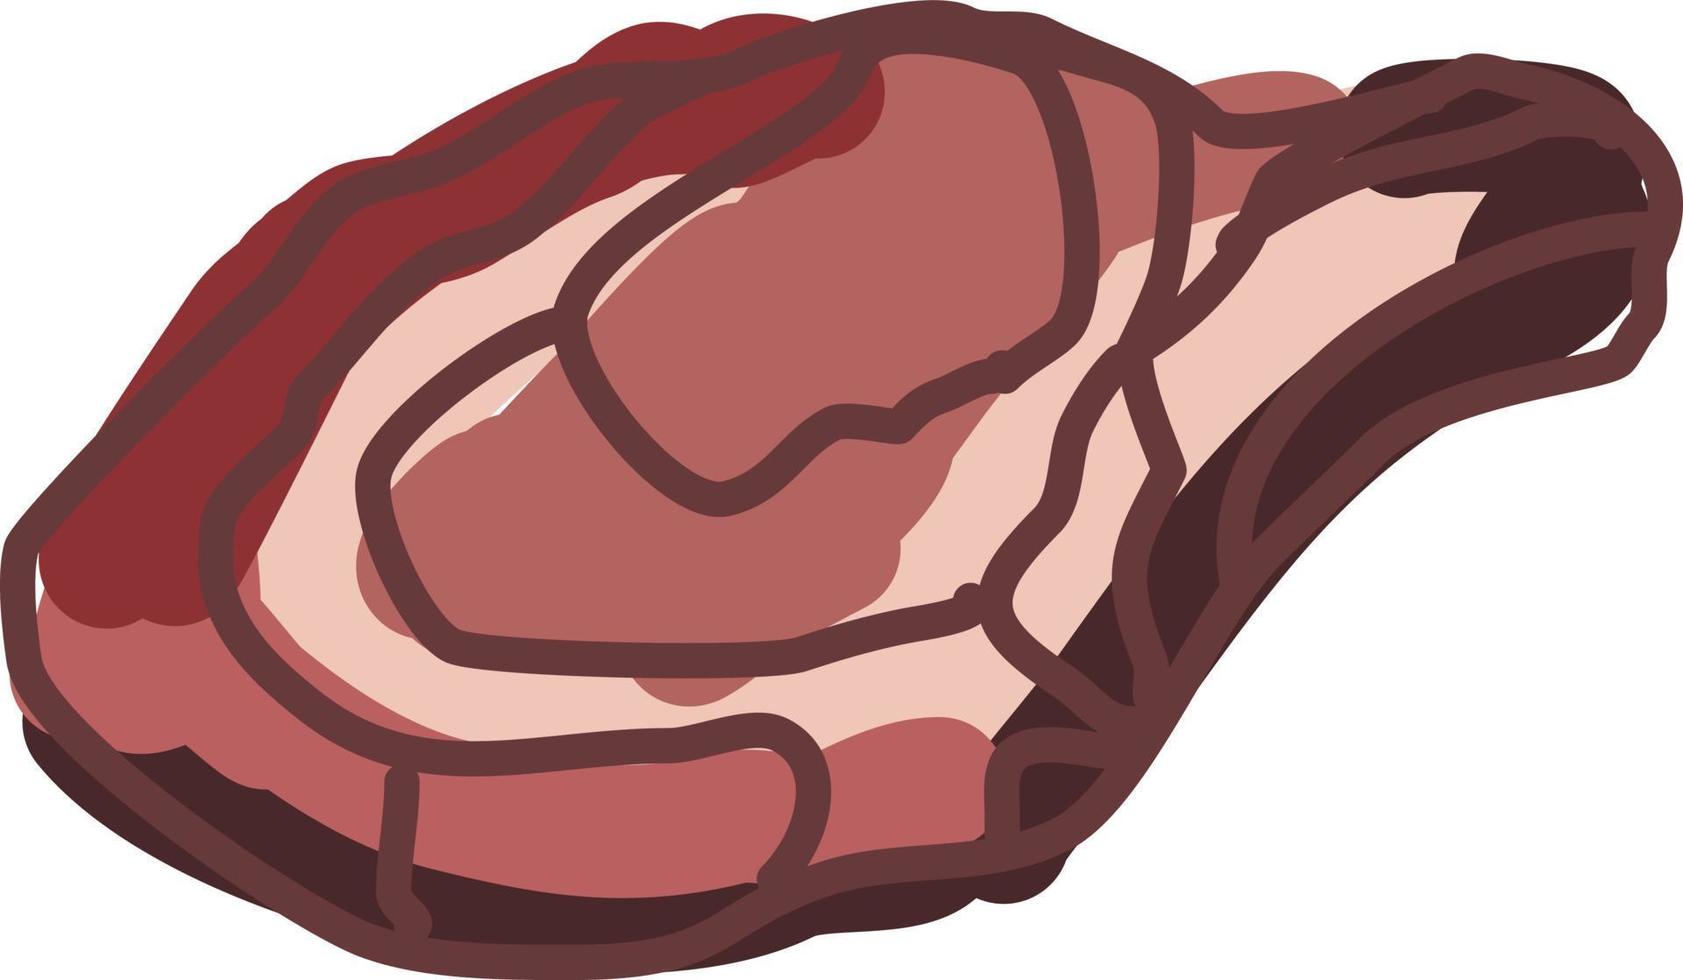 Steakknochen, Illustration, Vektor auf weißem Hintergrund.